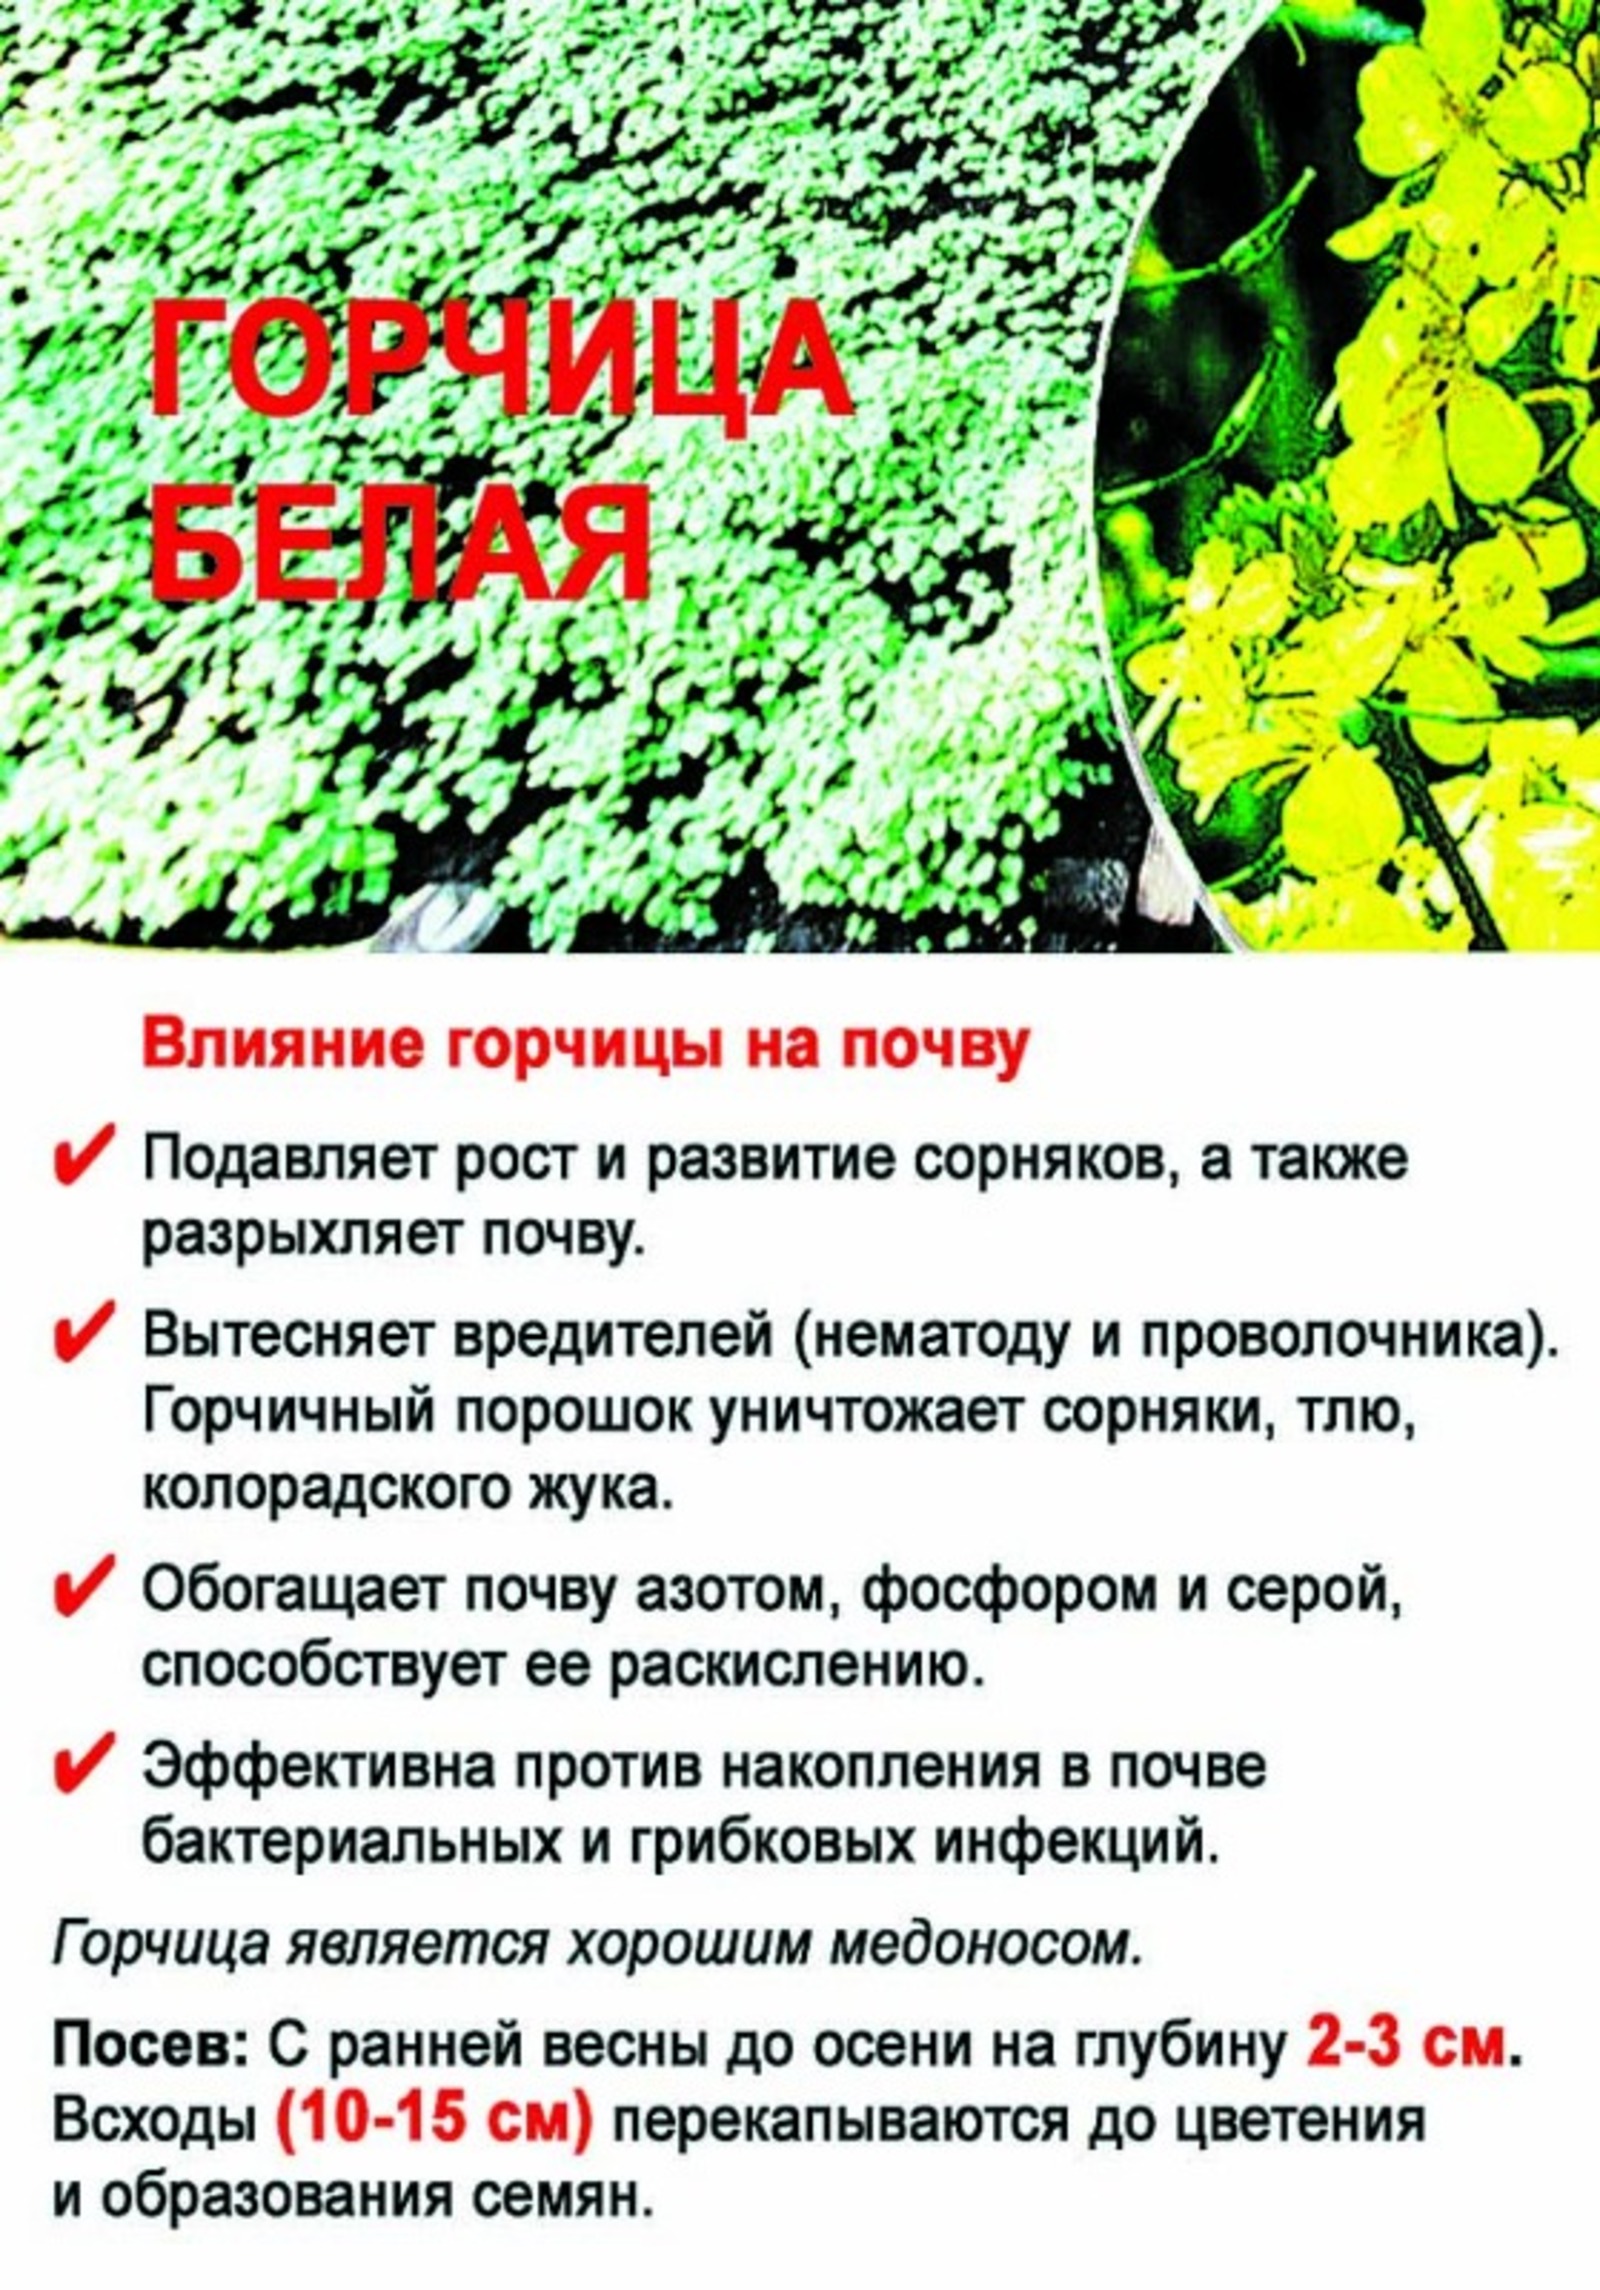 инфографика Эльвиры БАЛТАЧЕВОЙ